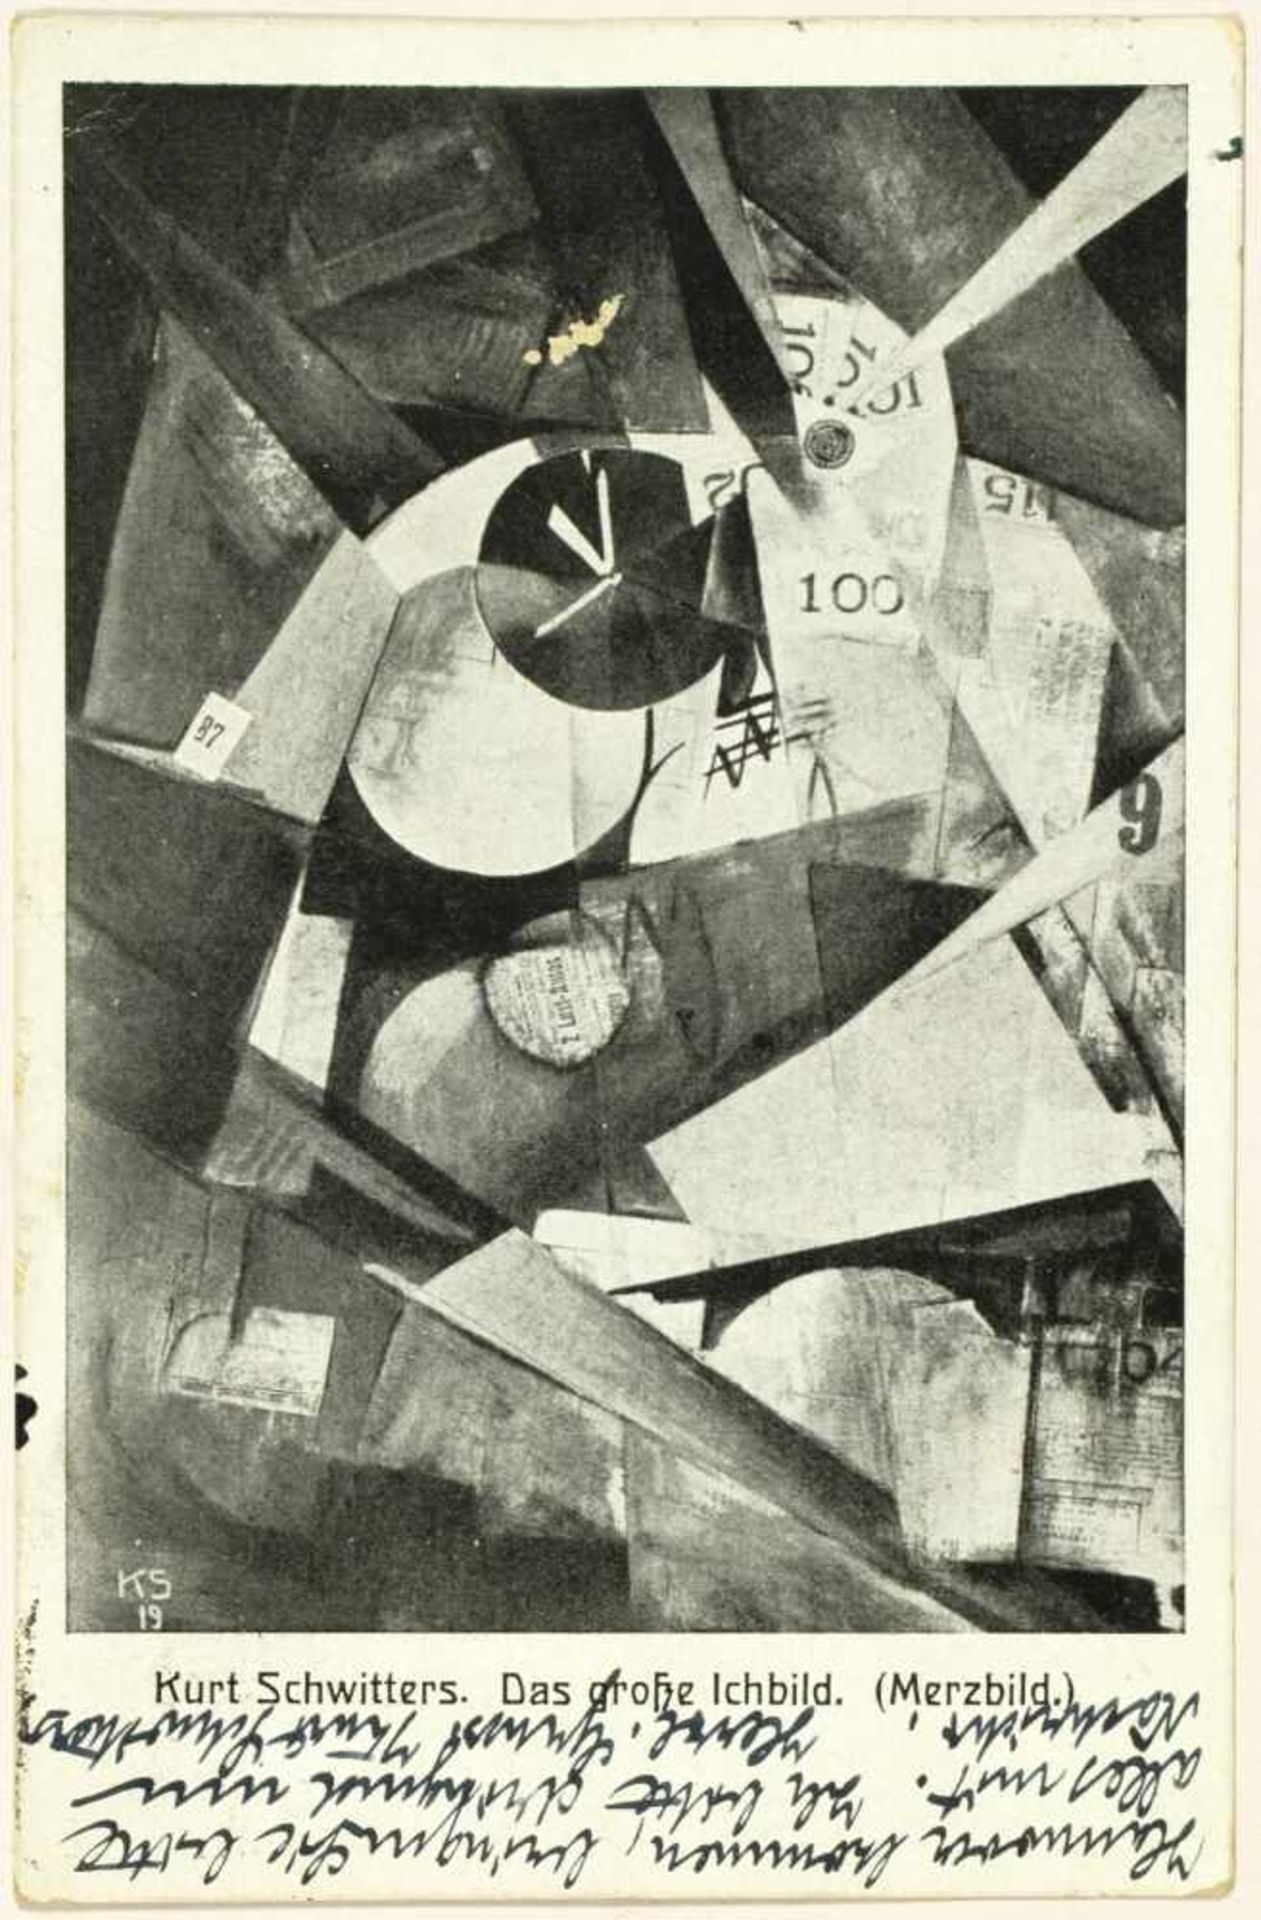 Kurt Schwitters. Eigenhändige Merzbild-Postkarte mit Unterschrift. Hannover, 25. 6. 1924. Beidseitig - Image 2 of 2